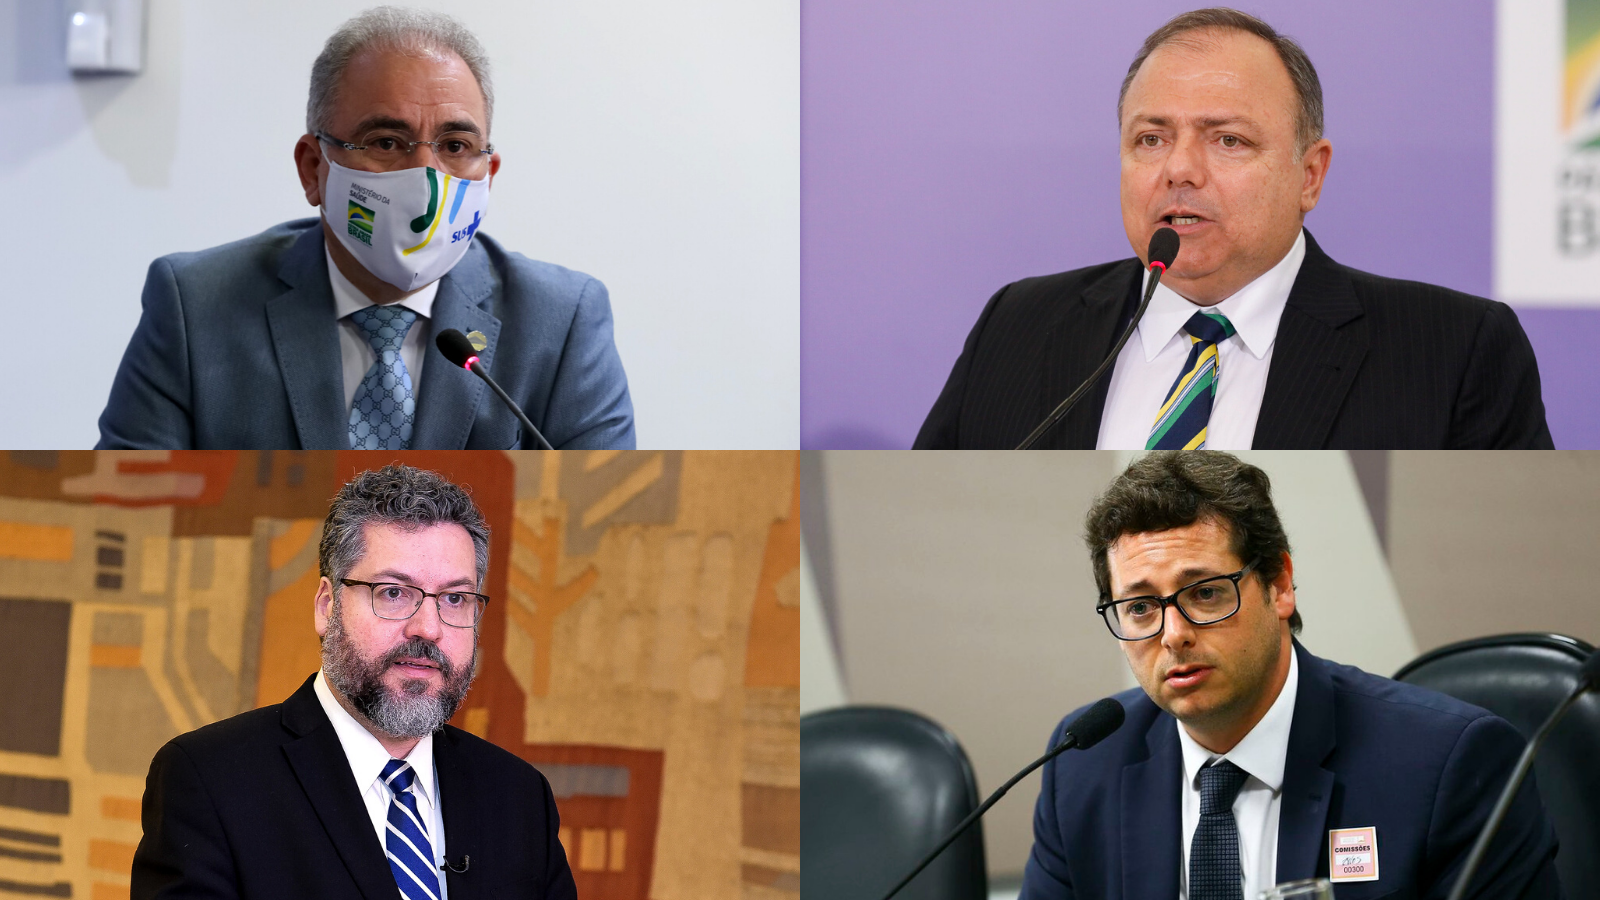 Marcelo Queiroga, Eduardo Pazuello, Ernesto Araújo e Fabio Wajngarten